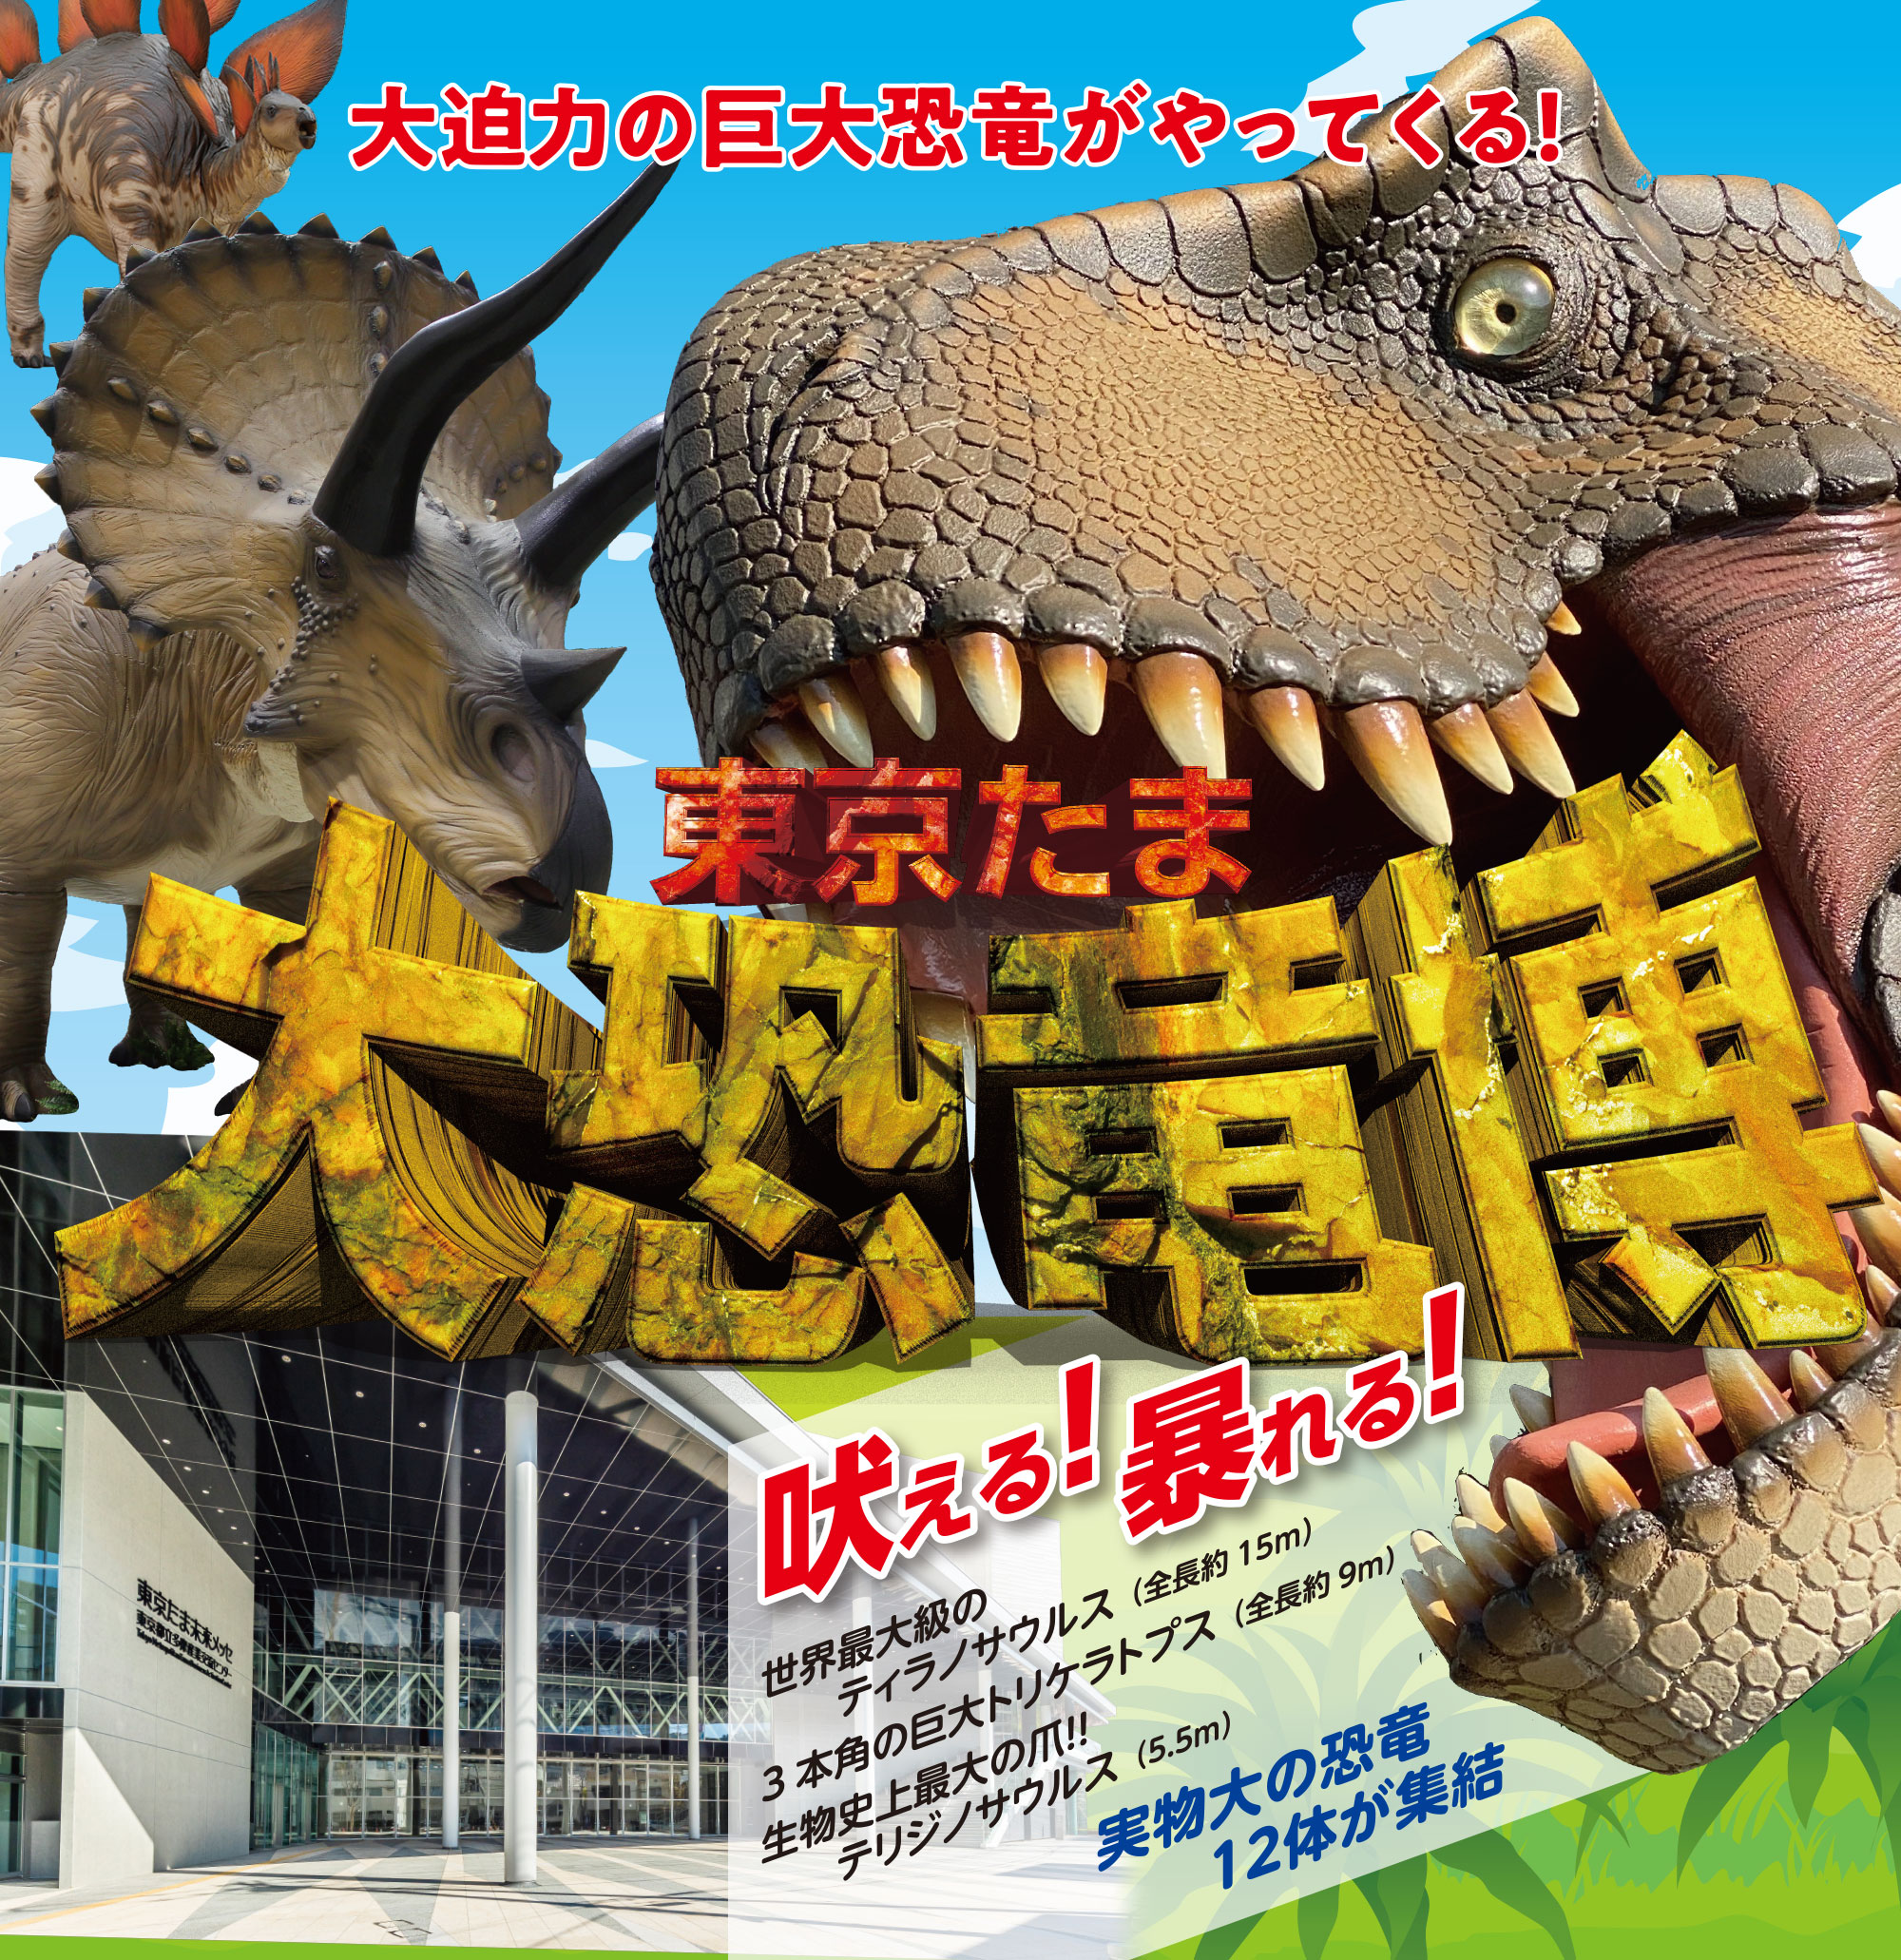 
大迫力の巨大恐竜がやってくる
東京たま大恐竜博
動く！吠える！暴れる！
世界最大級のティラノサウルス（全長約15m）
3本角の巨大トリケラトプス（全長約9m）
生物史上最大の爪！！ テリジノサウルス（5.5m）  
実物大の恐竜12体が集結！  
